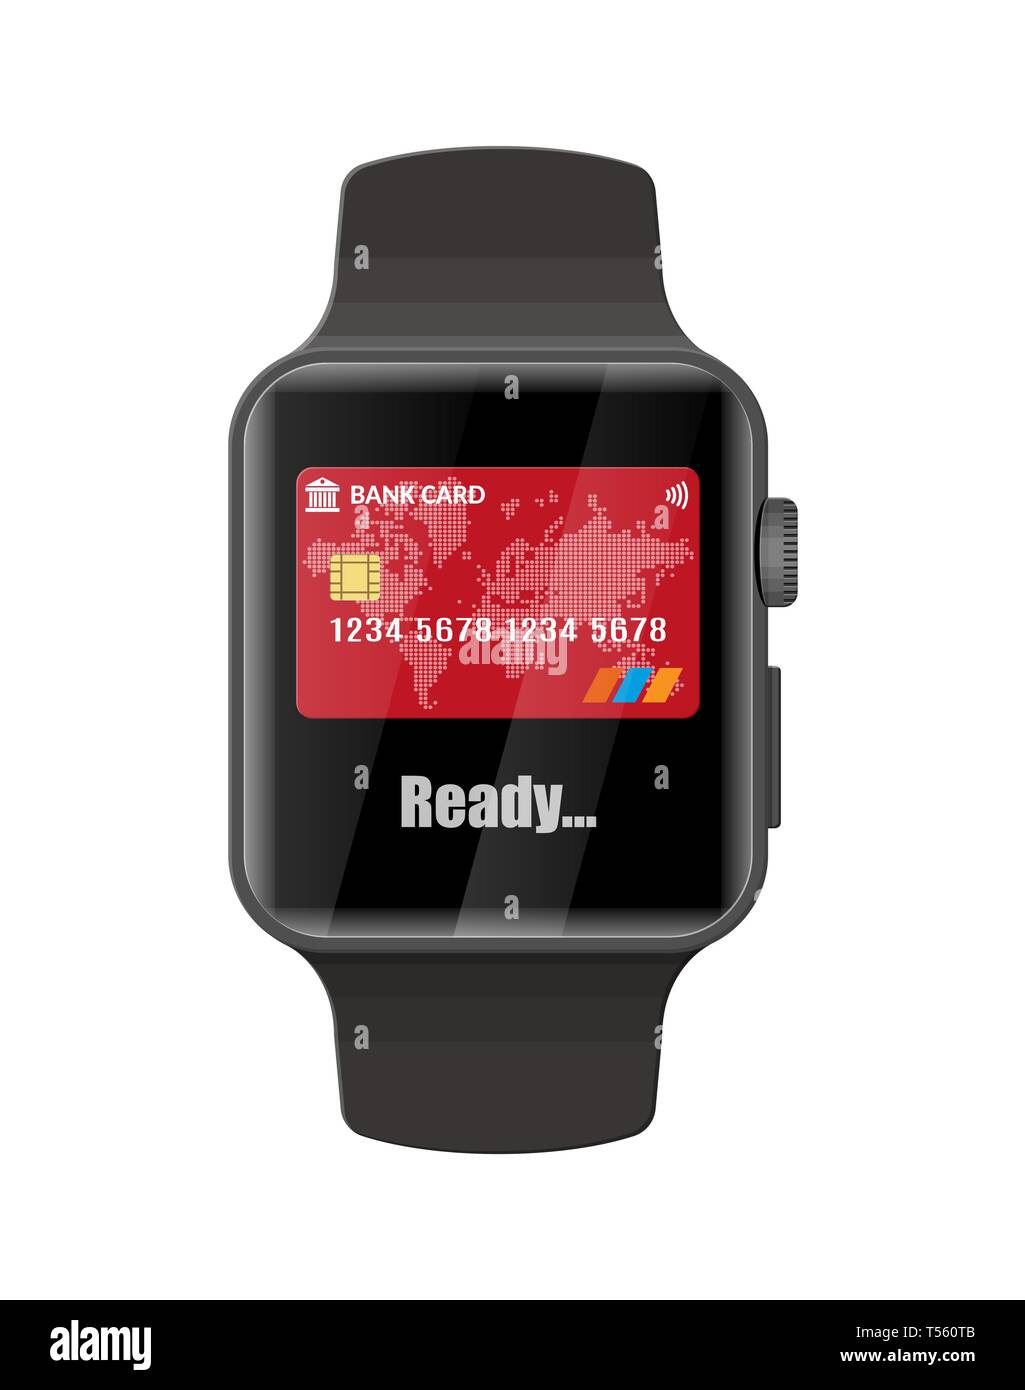 Smart guarda i pagamenti contactless. Smartwatch dispositivo moderno.  Accesso wireless, contactless o pagamenti senza contanti, rfid NFC.  Illustrazione Vettoriale in stile piatto Immagine e Vettoriale - Alamy